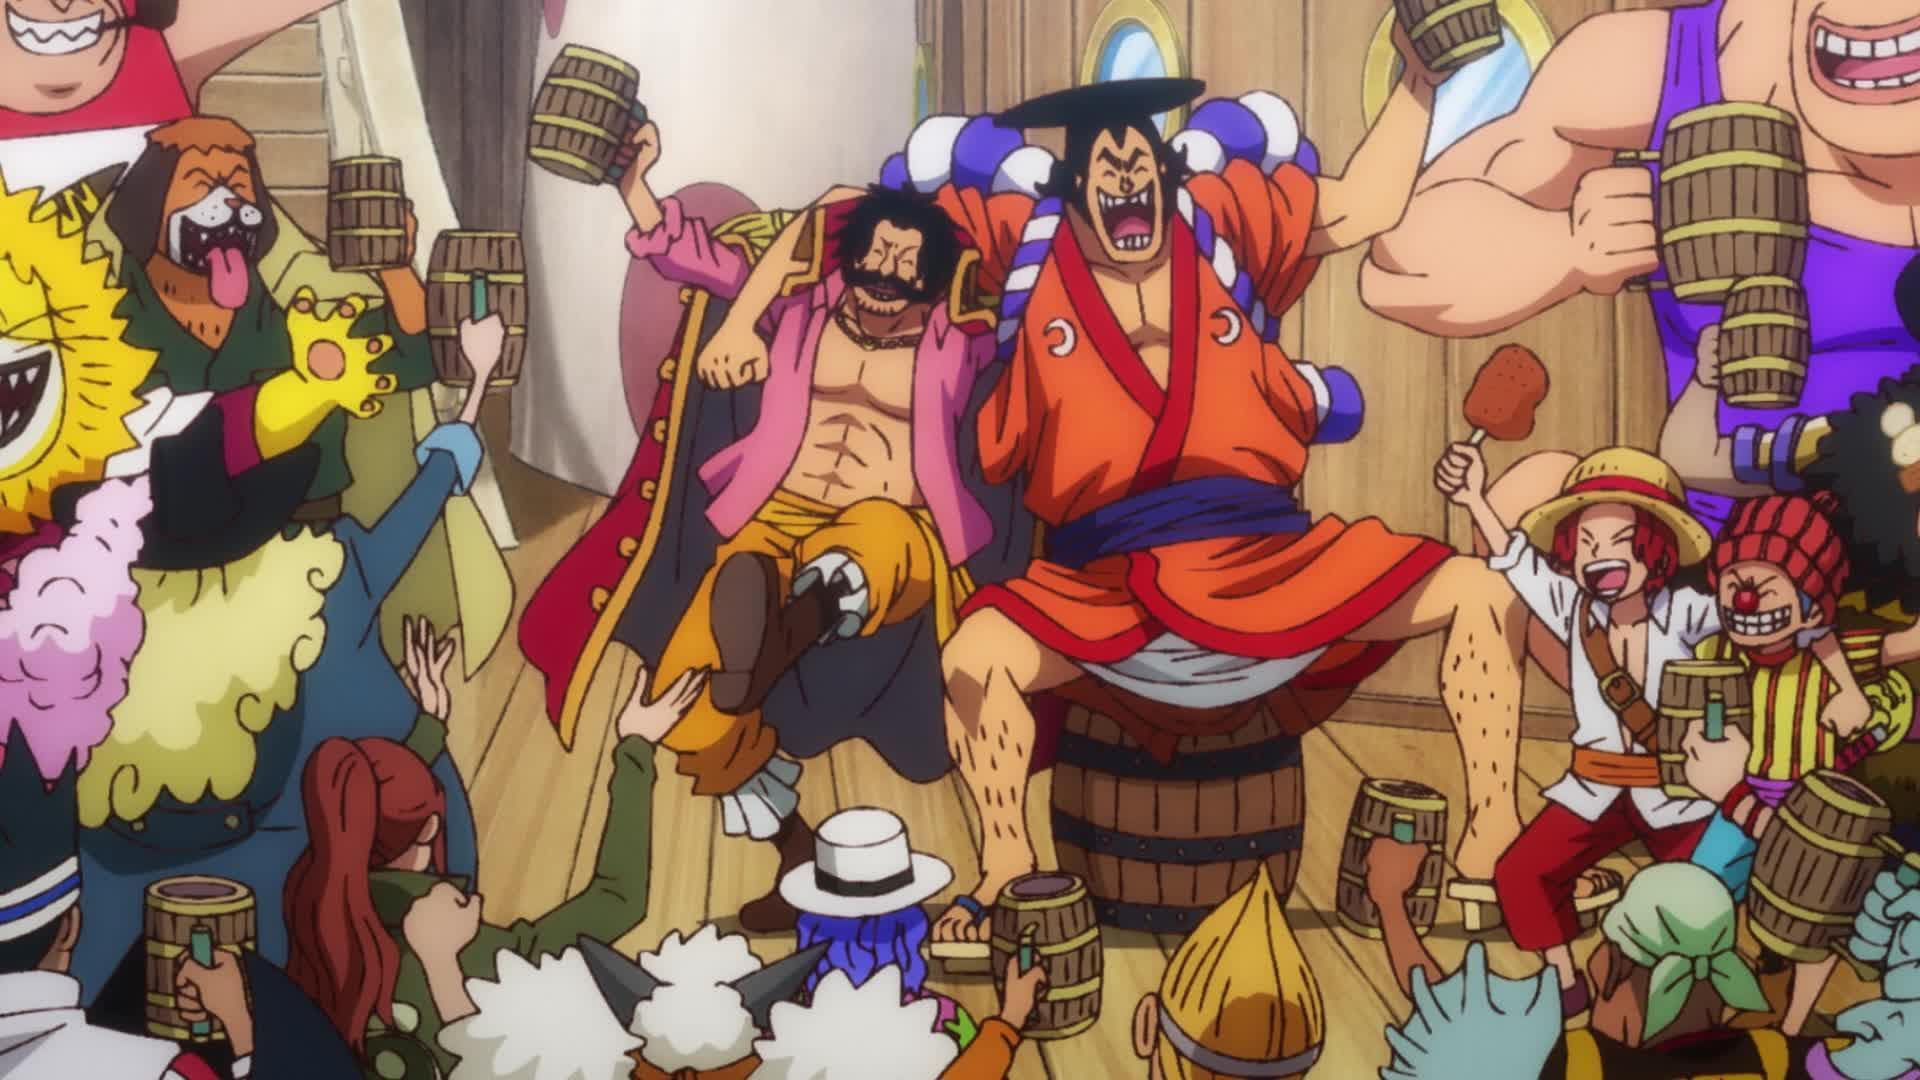 Bạn đã bao giờ muốn xem các tập phim One Piece về nhân vật Luffy, nhưng lại không tìm thấy một nguồn trực tuyến đáng tin cậy? Chúng tôi đã sẵn sàng cung cấp cho bạn One Piece Luffy streaming online với tất cả những tập phim mới và cũ. Bạn sẽ không bao giờ phải bỏ lỡ bất kỳ chi tiết mới nhất nào về Luffy và đồng đội của mình trong cuộc phiêu lưu hấp dẫn.